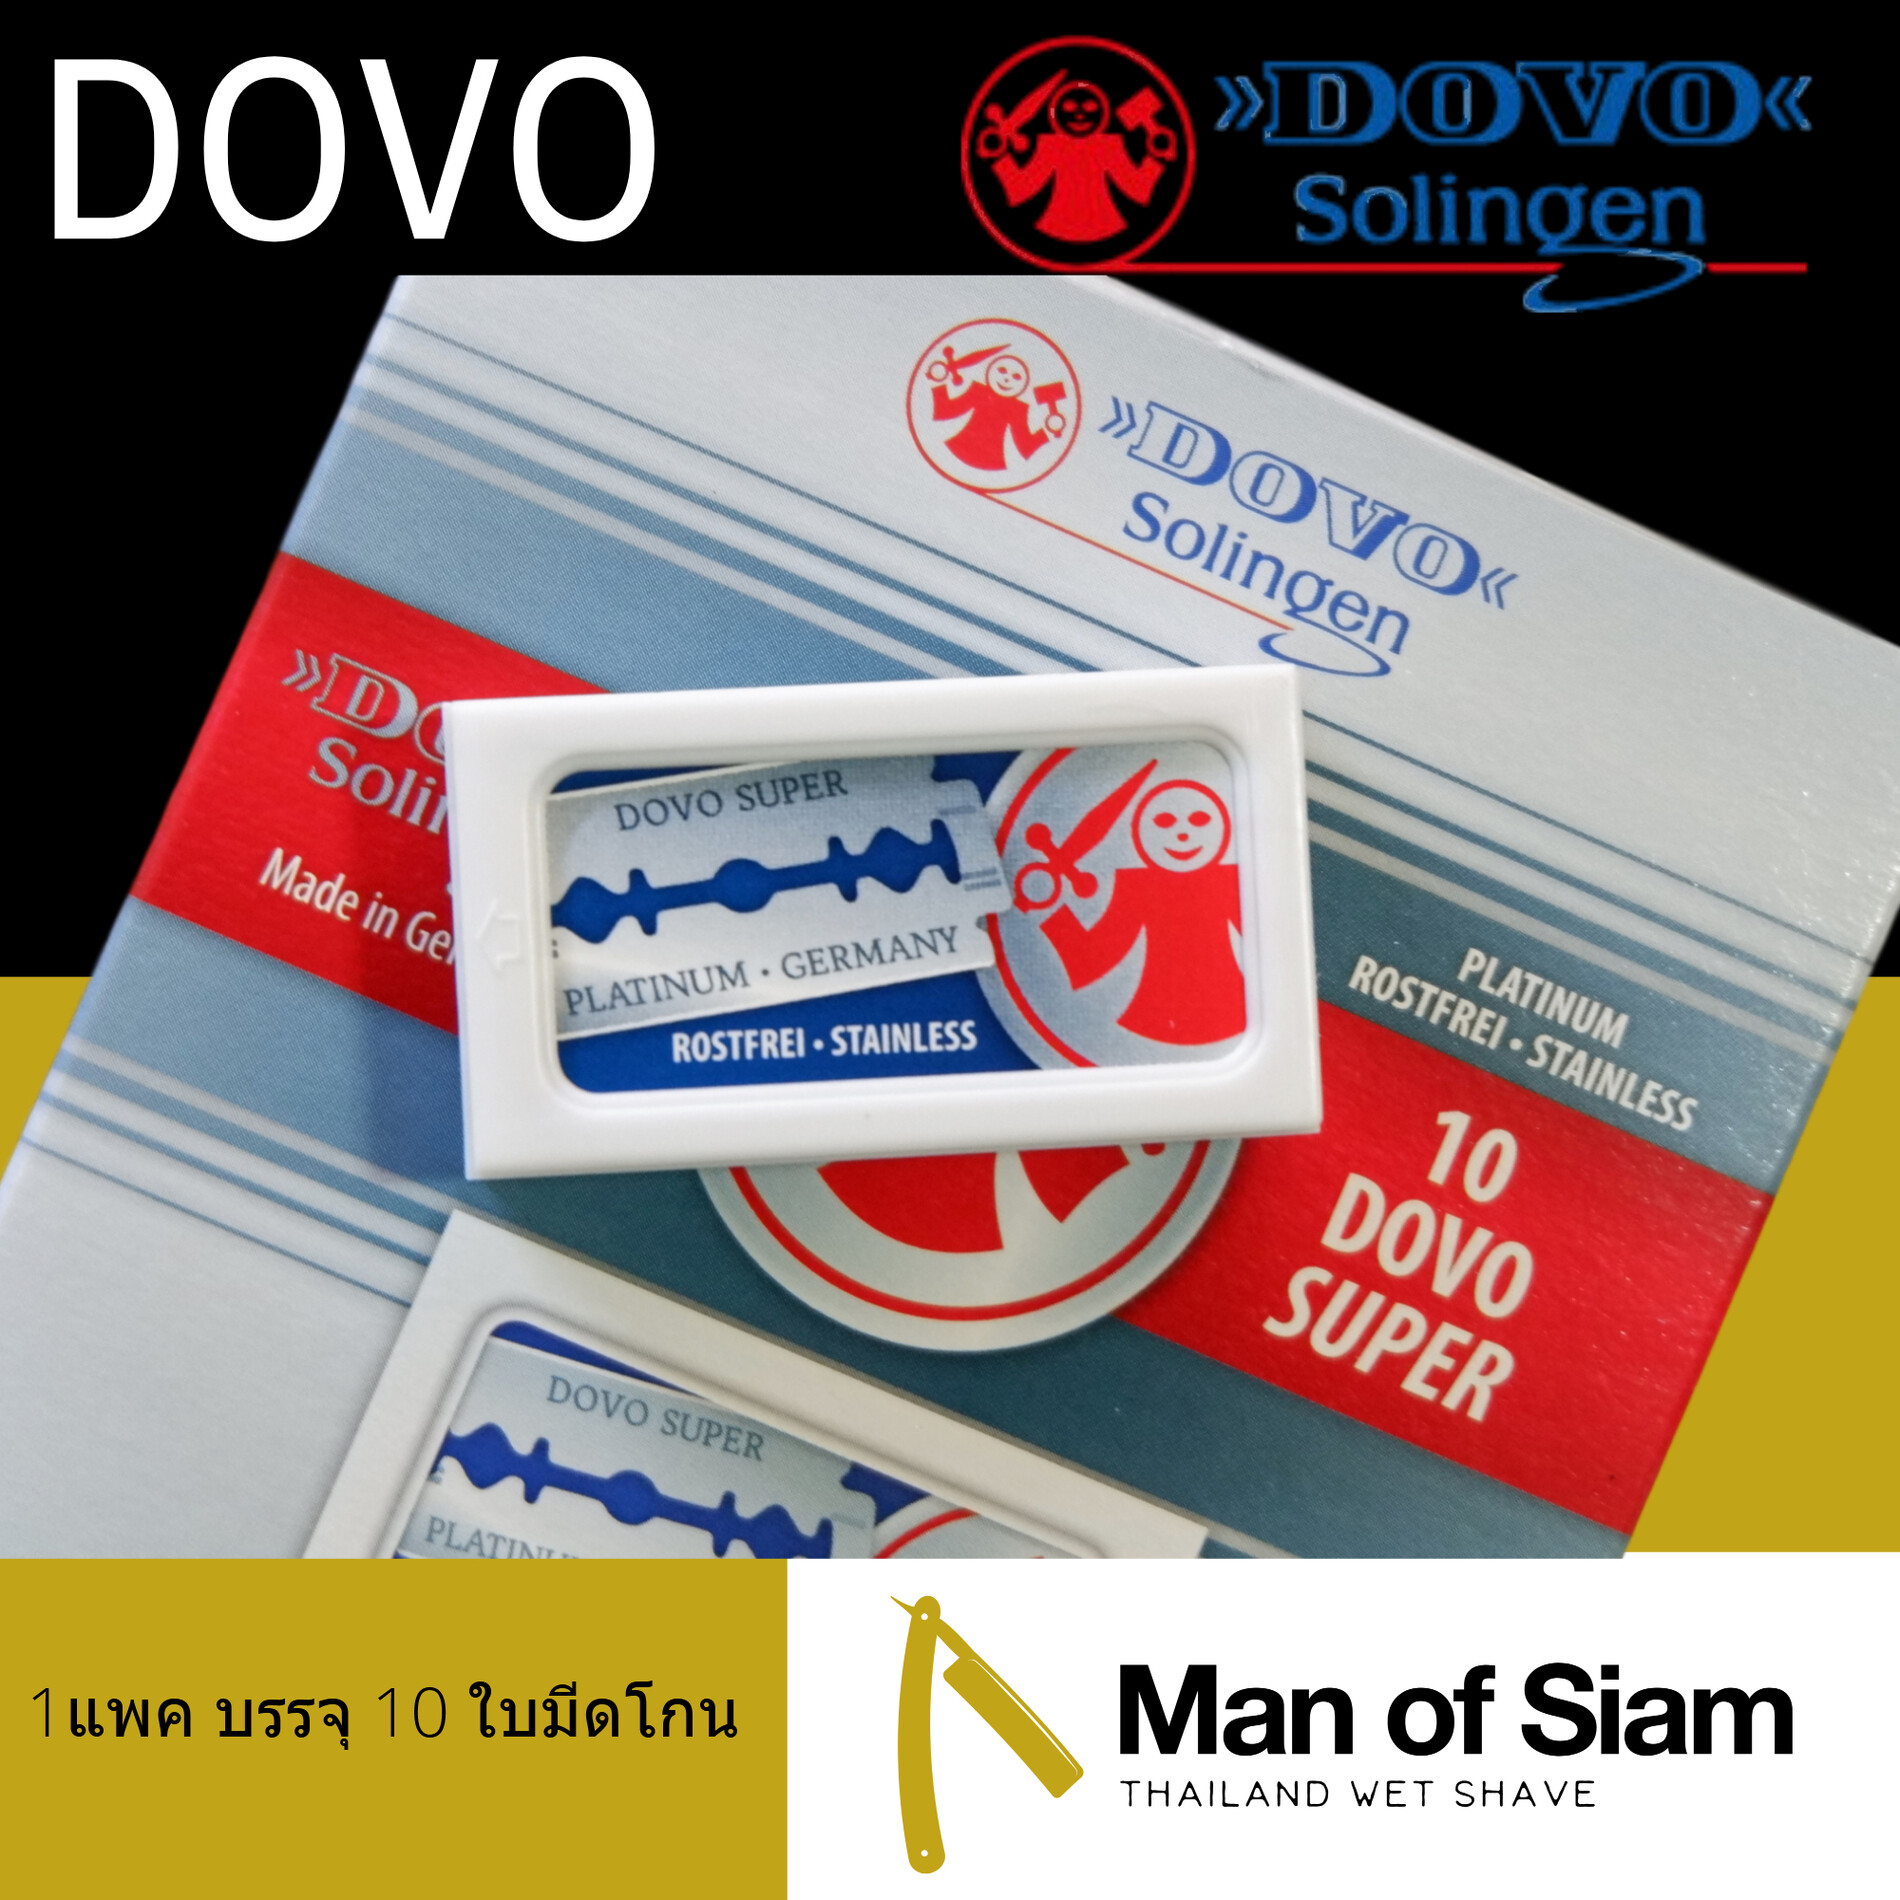 ใบมีดโกน DOVO Super Platinum Stainless 1 แพค บรรจุ 10 ใบมีดโกน